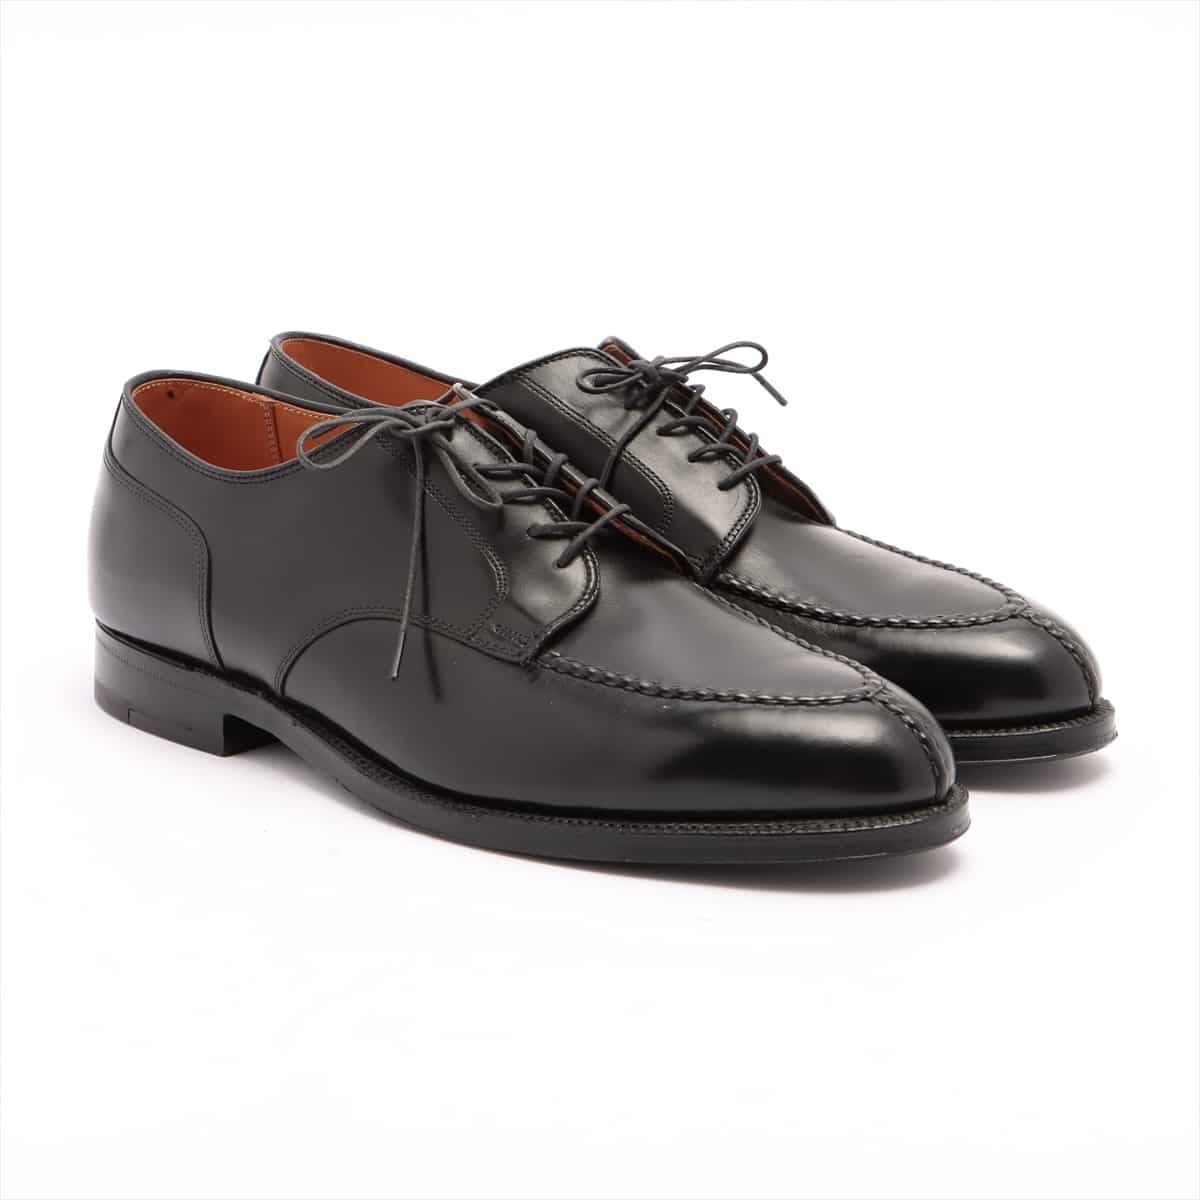 Alden calf Leather shoes 11 Men's Black  Handsewn Vamp Calfskin 961, u chip